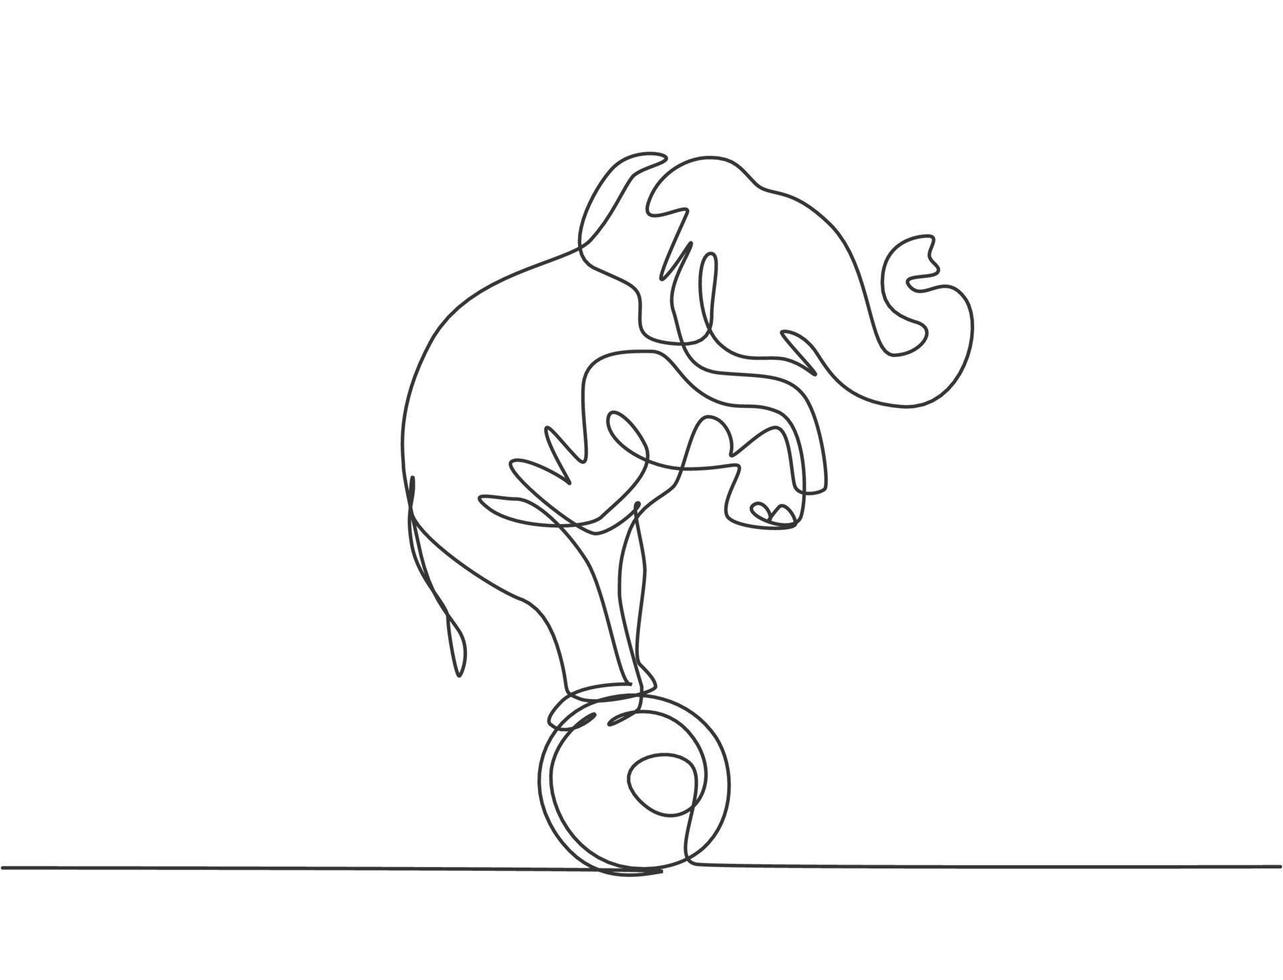 una linea continua che disegna un elefante addestrato in piedi sulla palla con le zampe anteriori sollevate. performance molto buona e spettacolo circense di successo. illustrazione grafica vettoriale di disegno a linea singola.